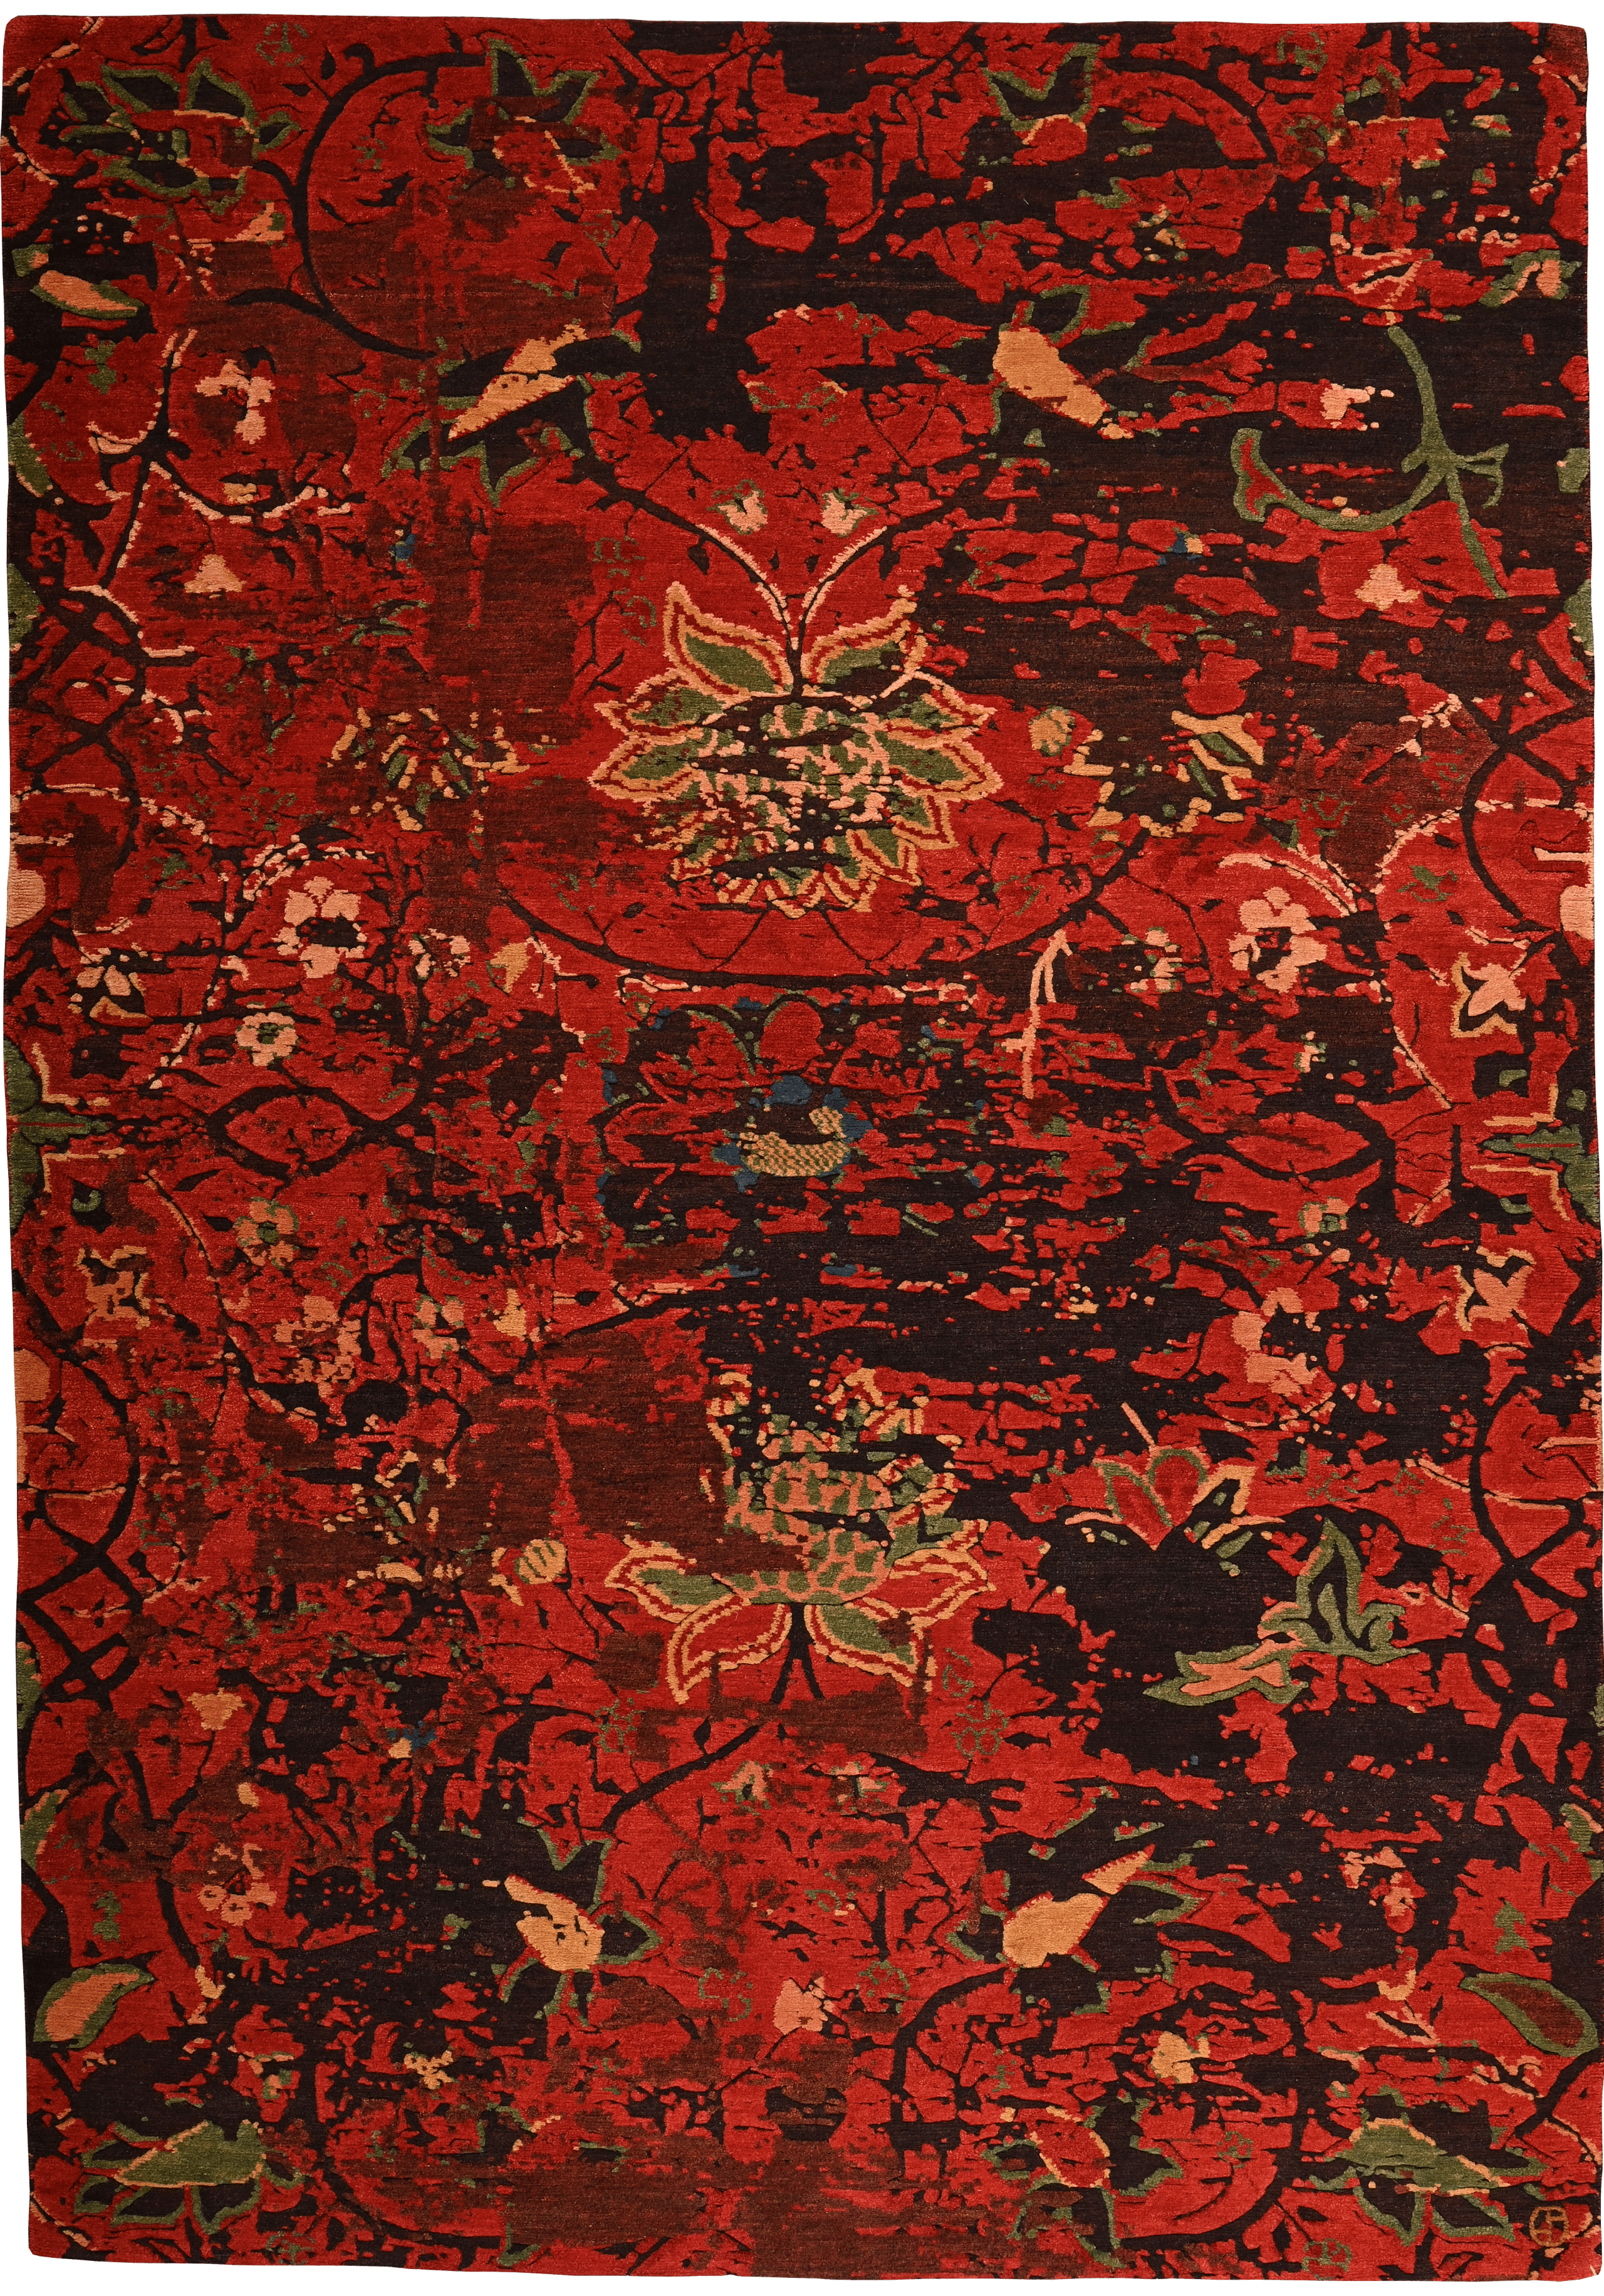 Geba Teppich "Wangchuk" mit einem floralem Muster, tibetische Motive werden aufgegriffen, in rot-braun-grün-beige, Reliefschnitt, aus Nepal, 100 Knoten, gefertigt aus pflanzlich gefärbter tibetischer Hochlandschafwolle - Produktbild - Geba Teppich